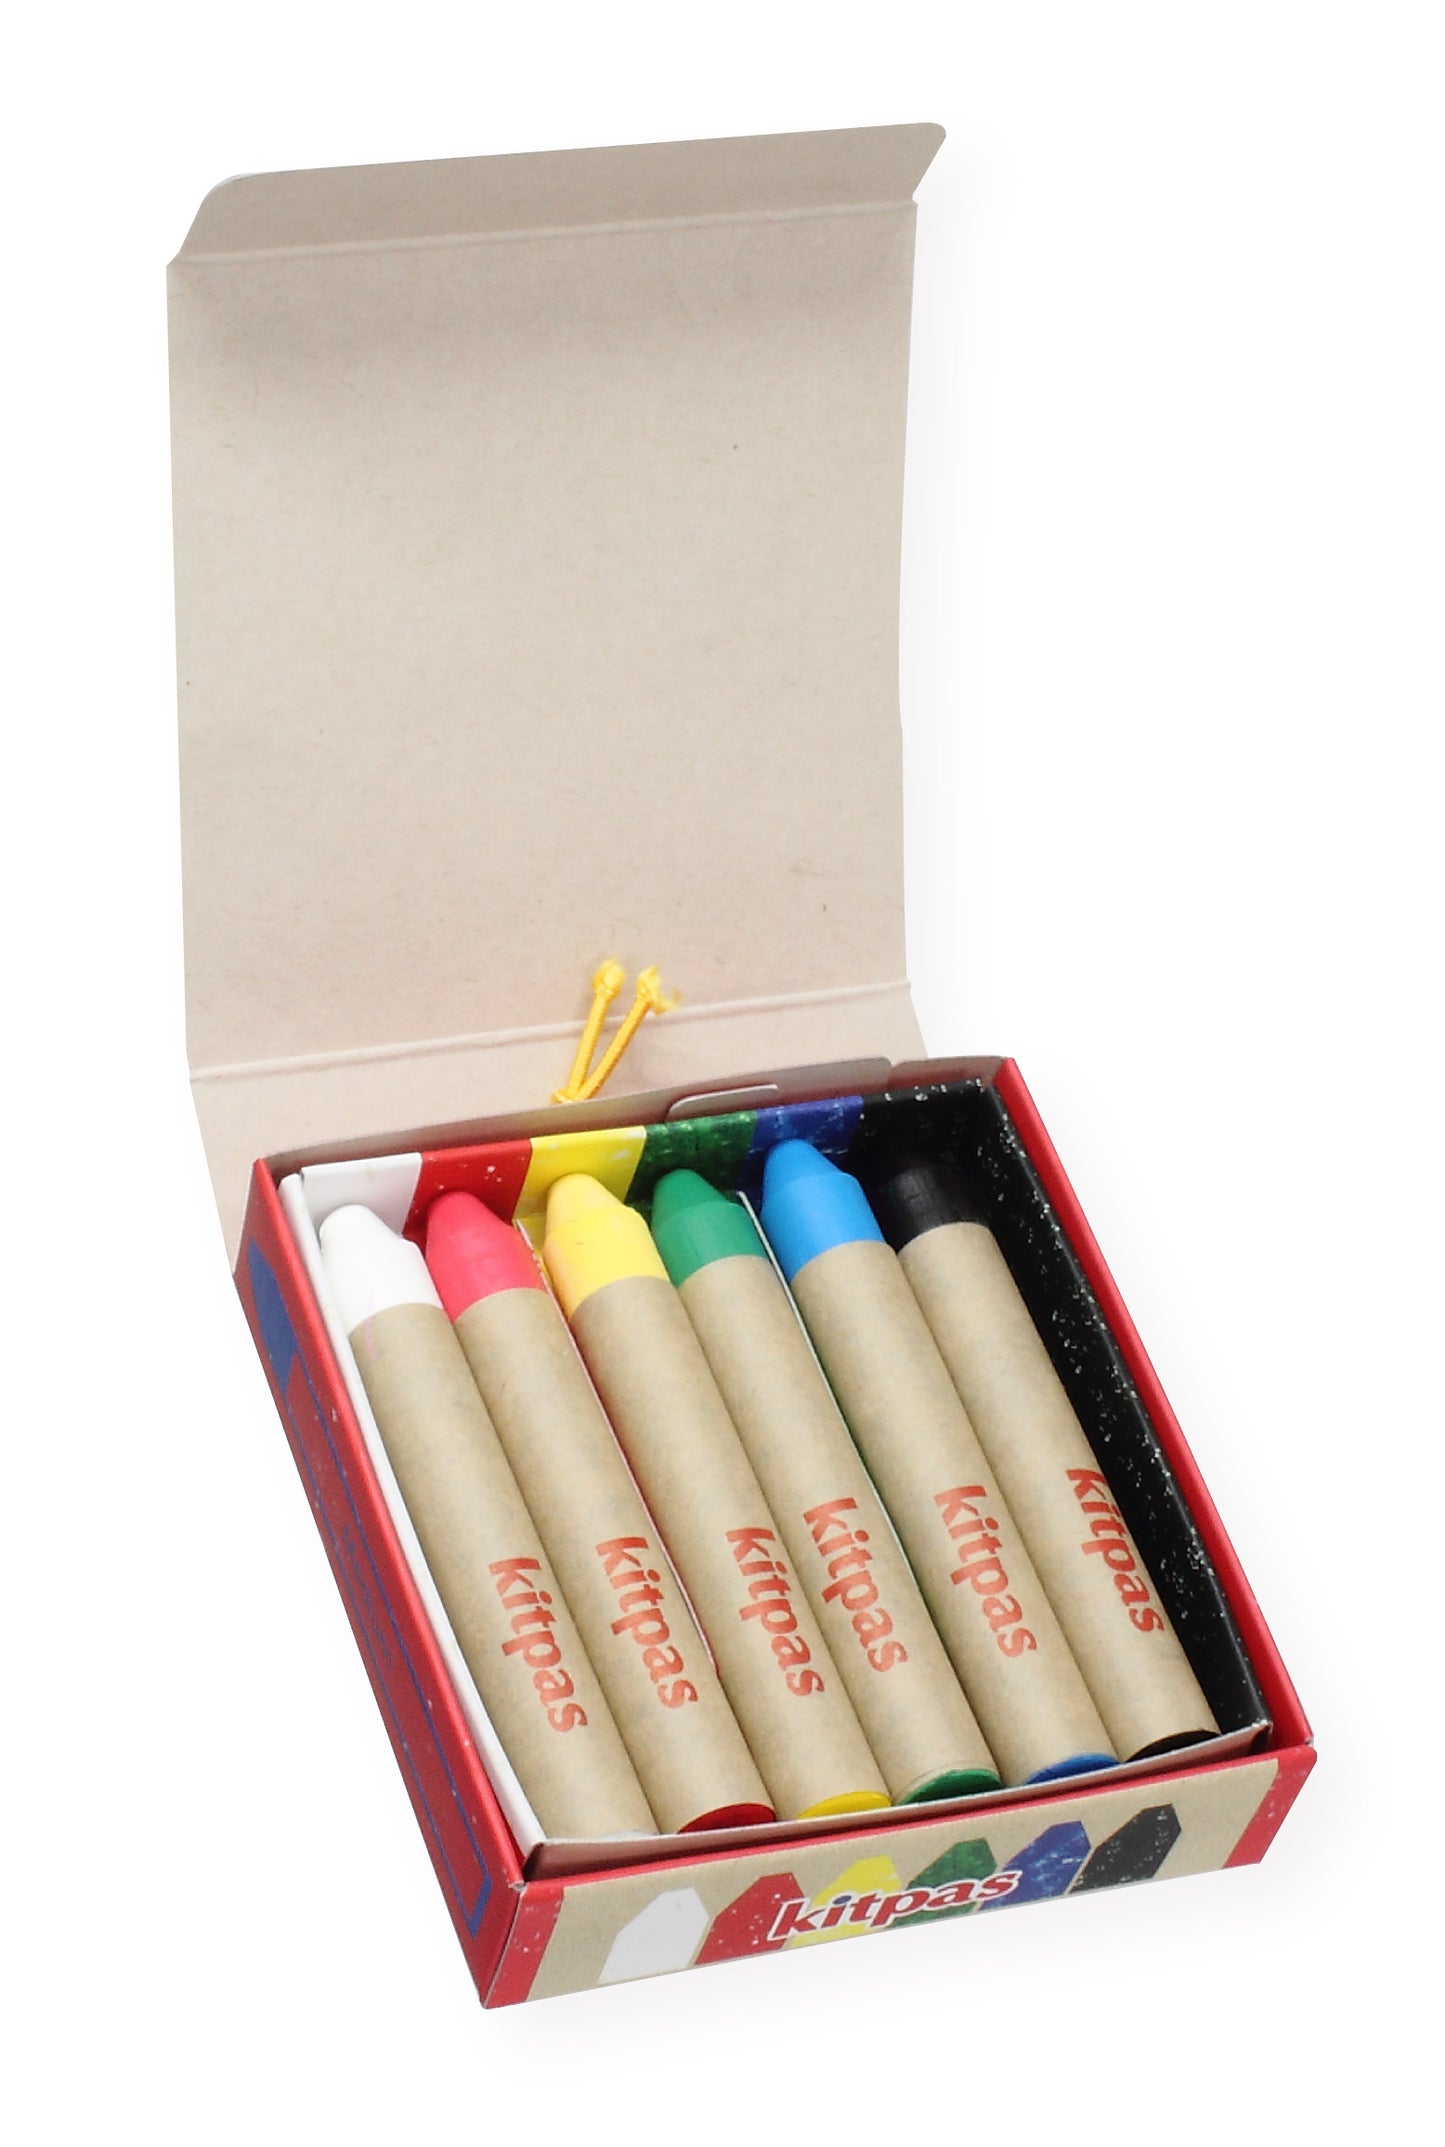 Kitpas - Crayons Medium 6 colors